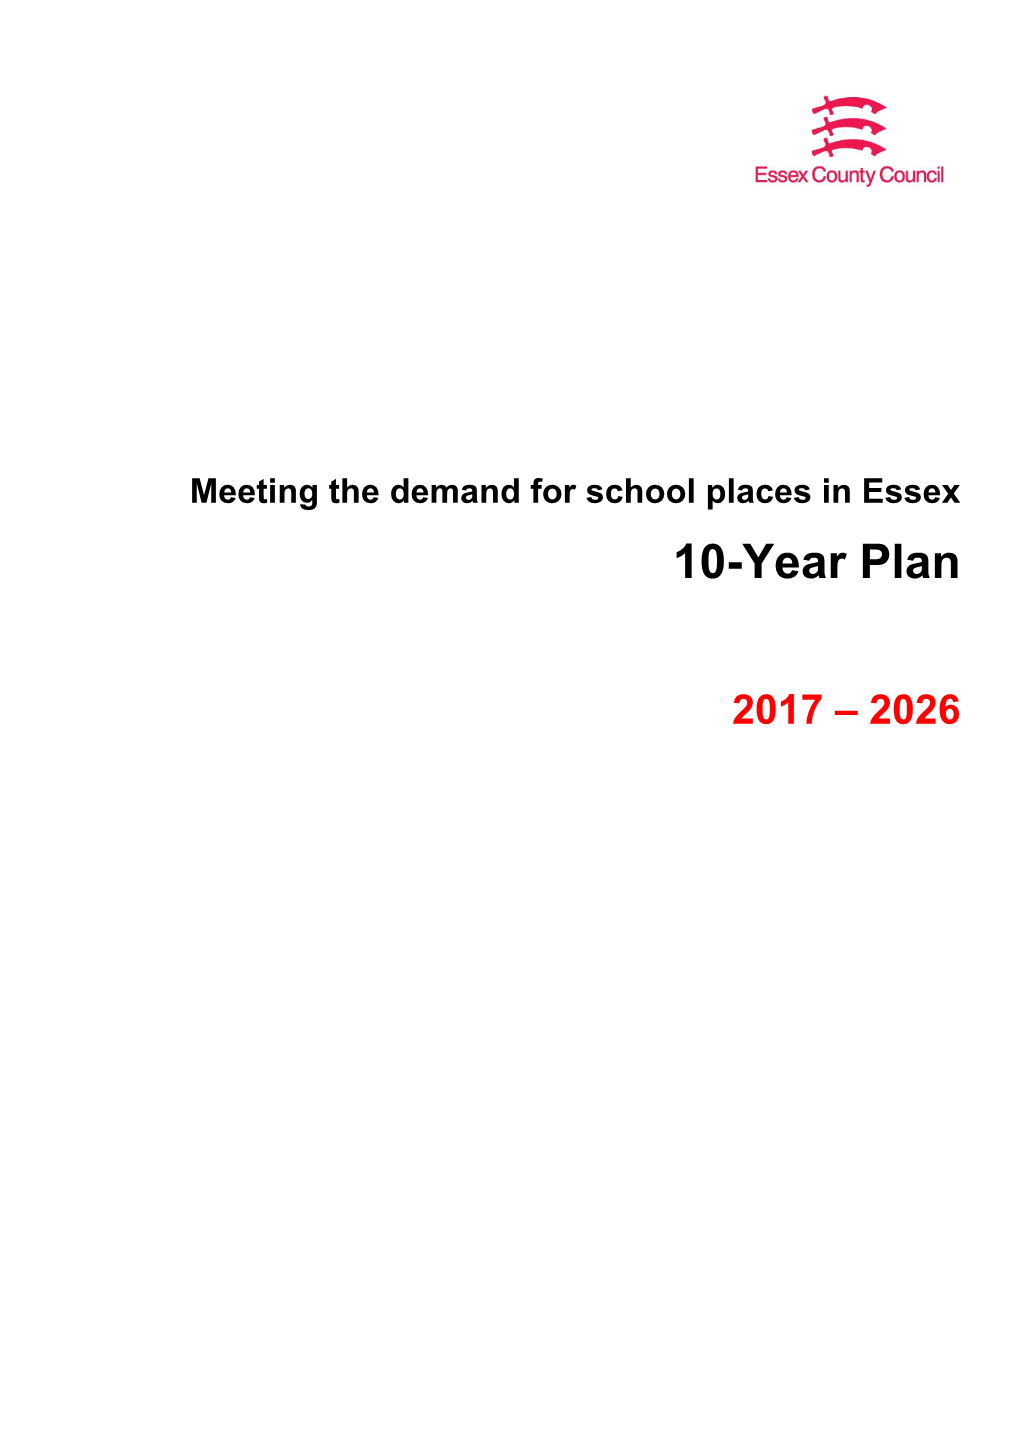 10-Year Plan